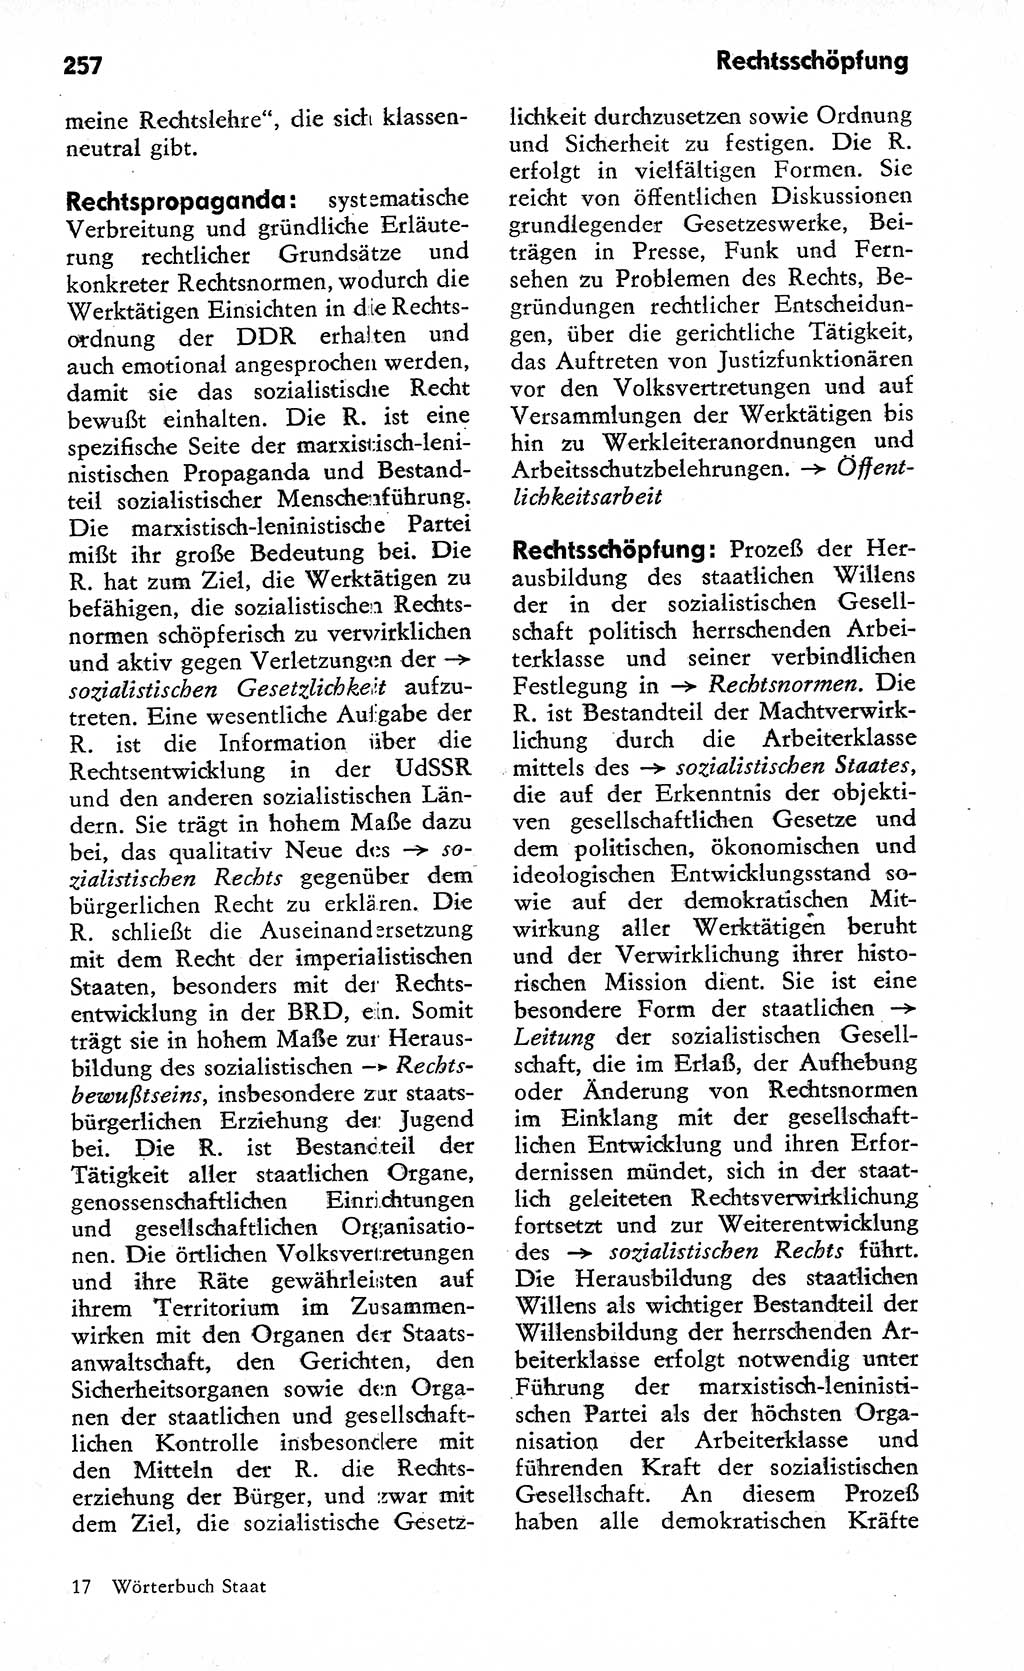 Wörterbuch zum sozialistischen Staat [Deutsche Demokratische Republik (DDR)] 1974, Seite 257 (Wb. soz. St. DDR 1974, S. 257)